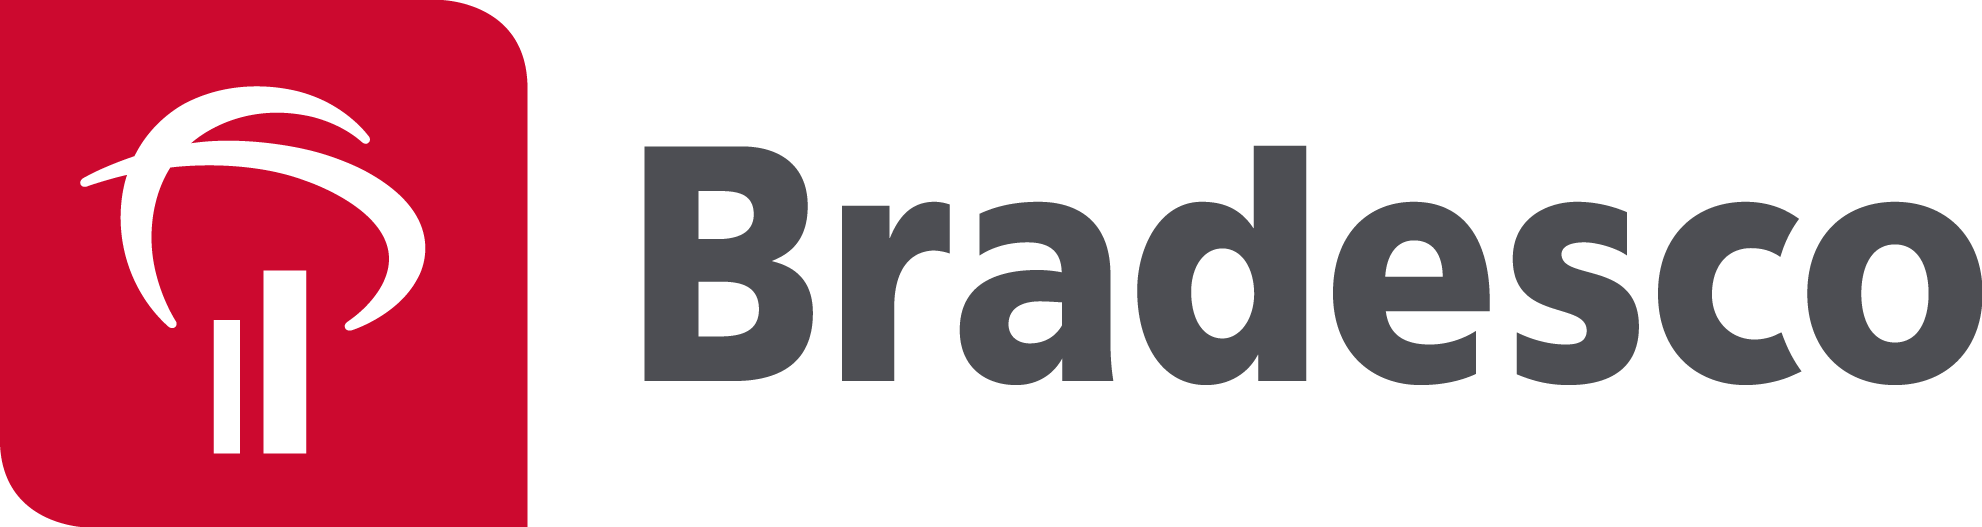 Banco Bradesco Logo PNG-PlusP